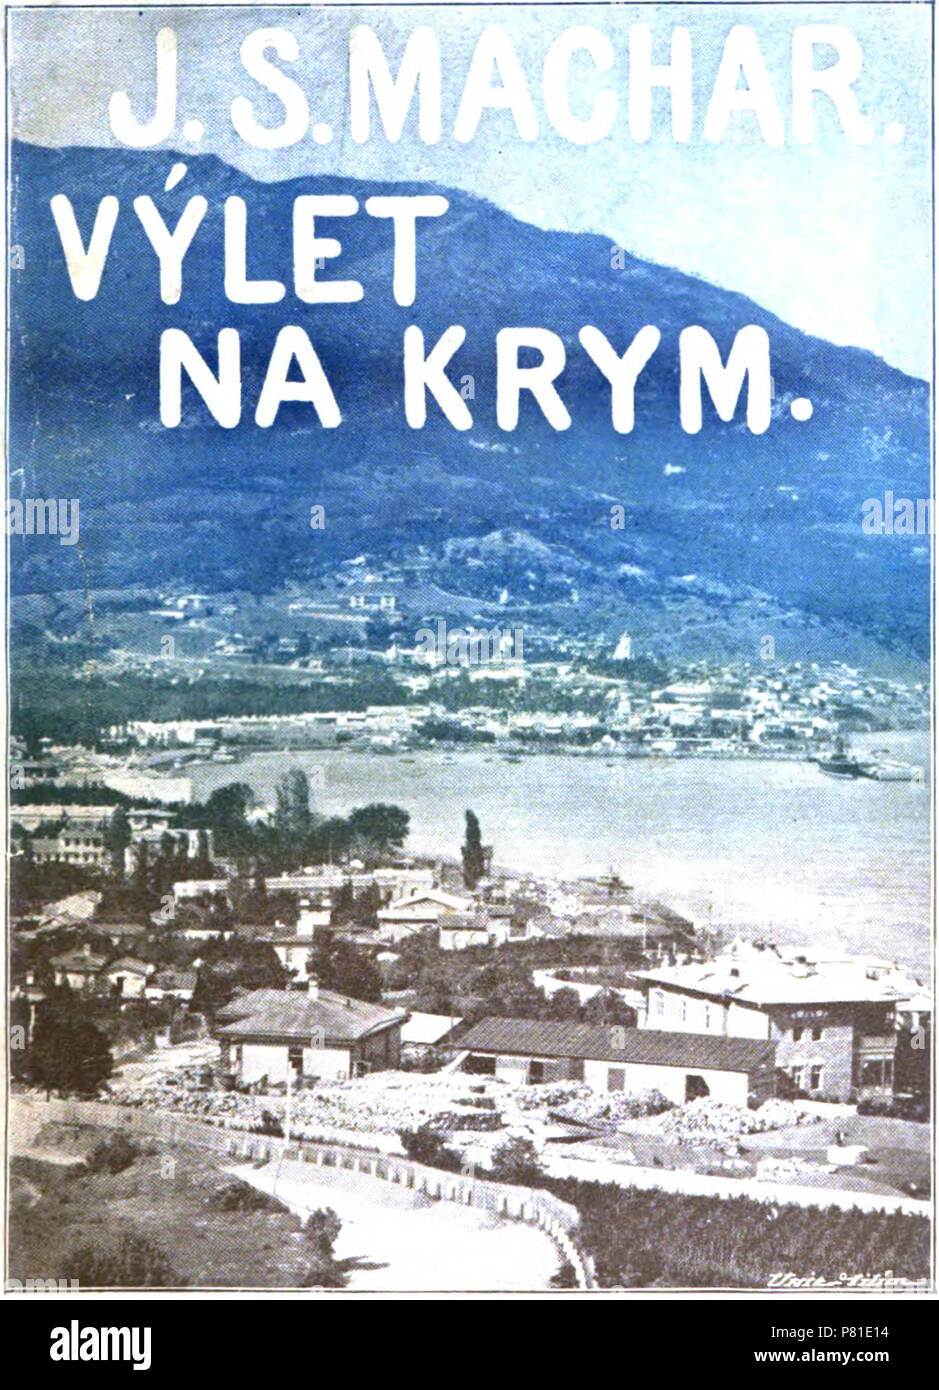 Výlet 397 na Krym - image sur la page de titre Banque D'Images